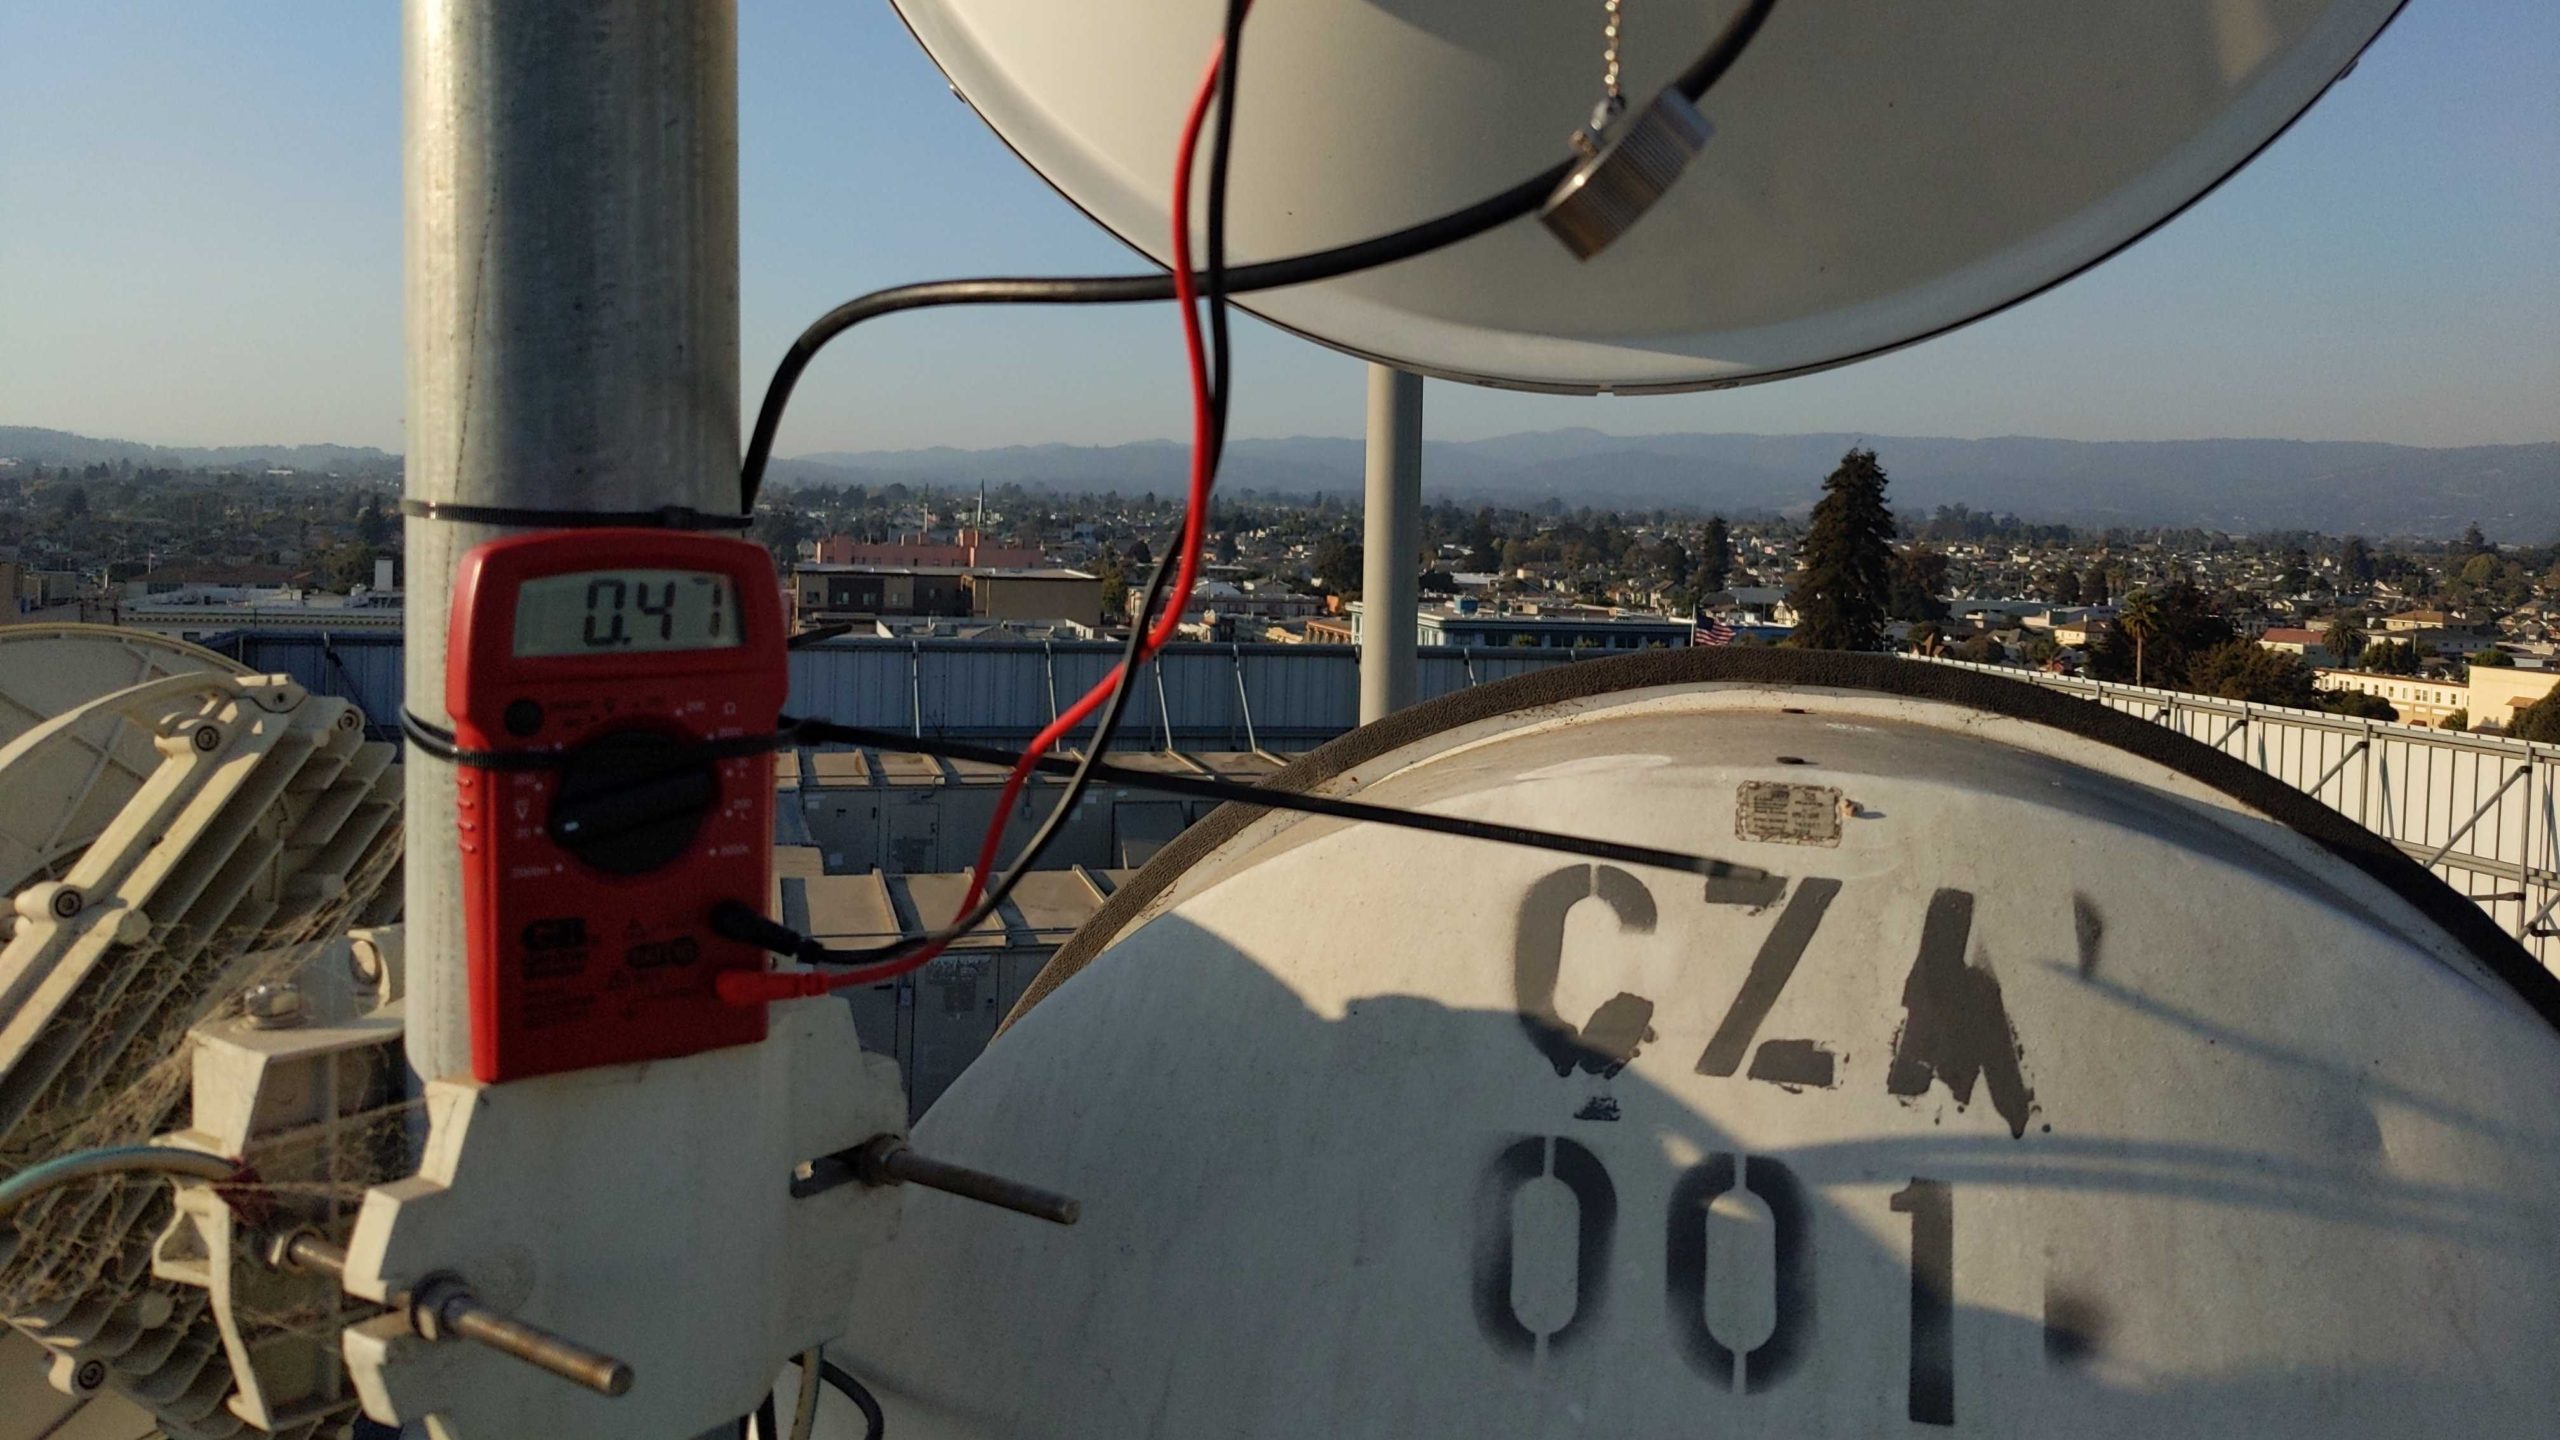 rooftop broadband equipment installed by Cruzio